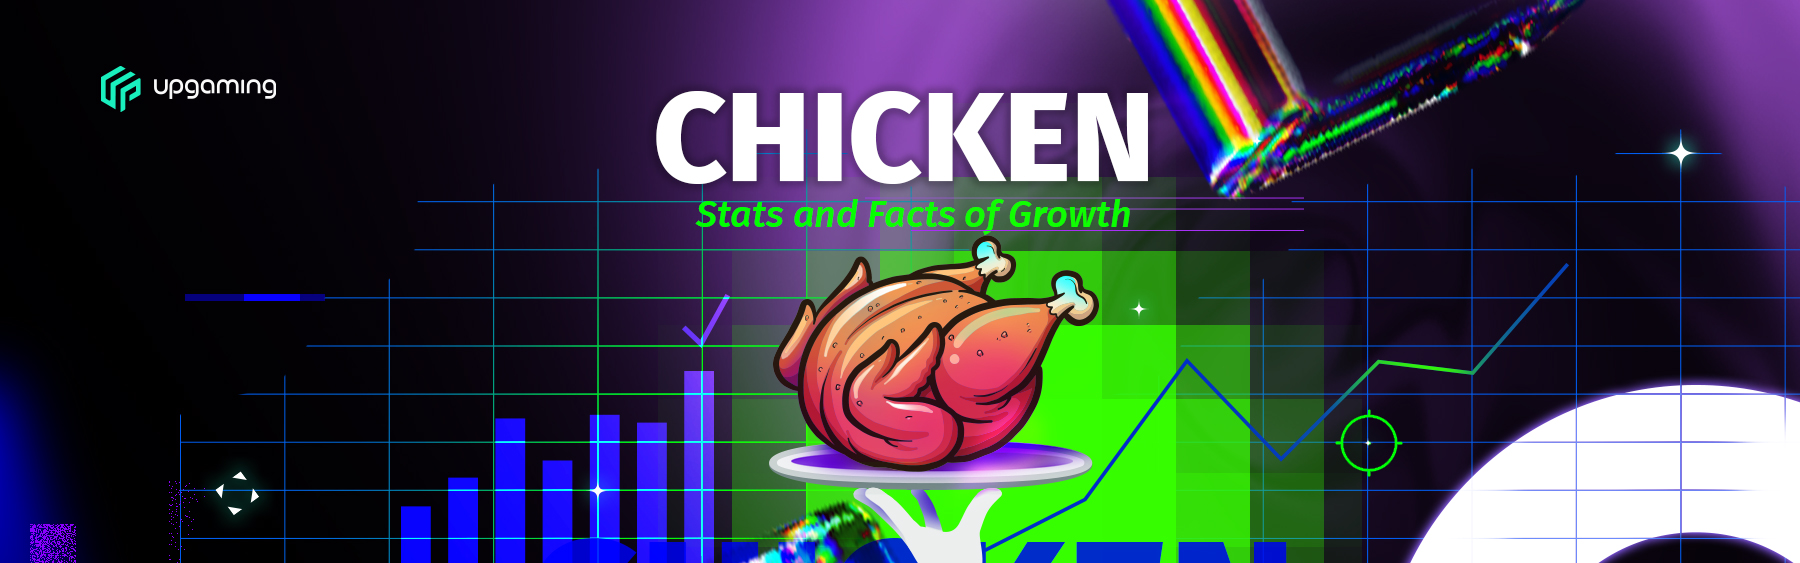 Chicken mini game